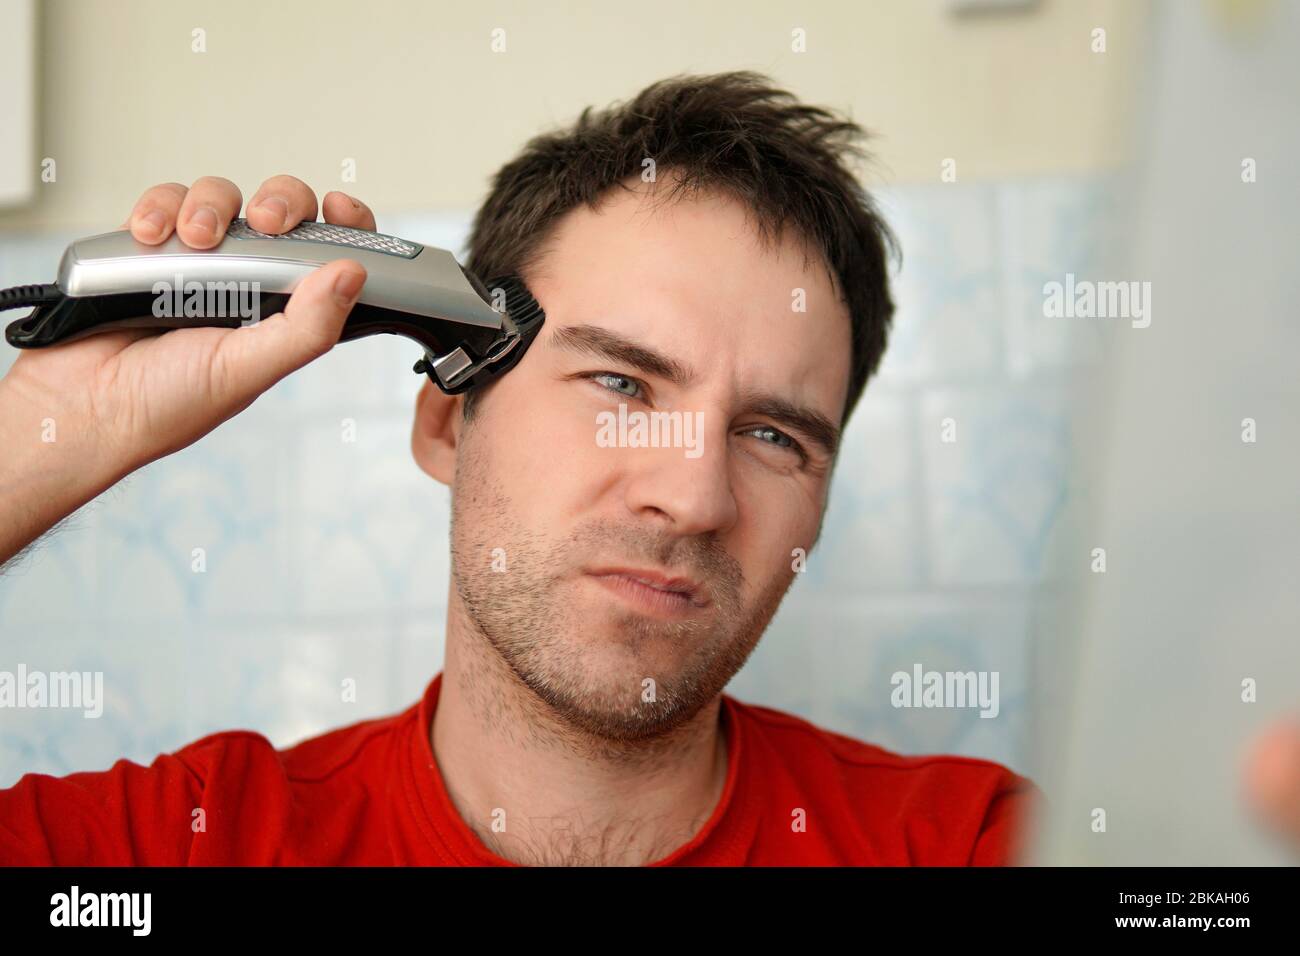 Un homme coupe ses cheveux sur la tête avec un rasoir électrique.  Nettoyez-vous seul. Vous souffrez de la tonte des cheveux Photo Stock -  Alamy